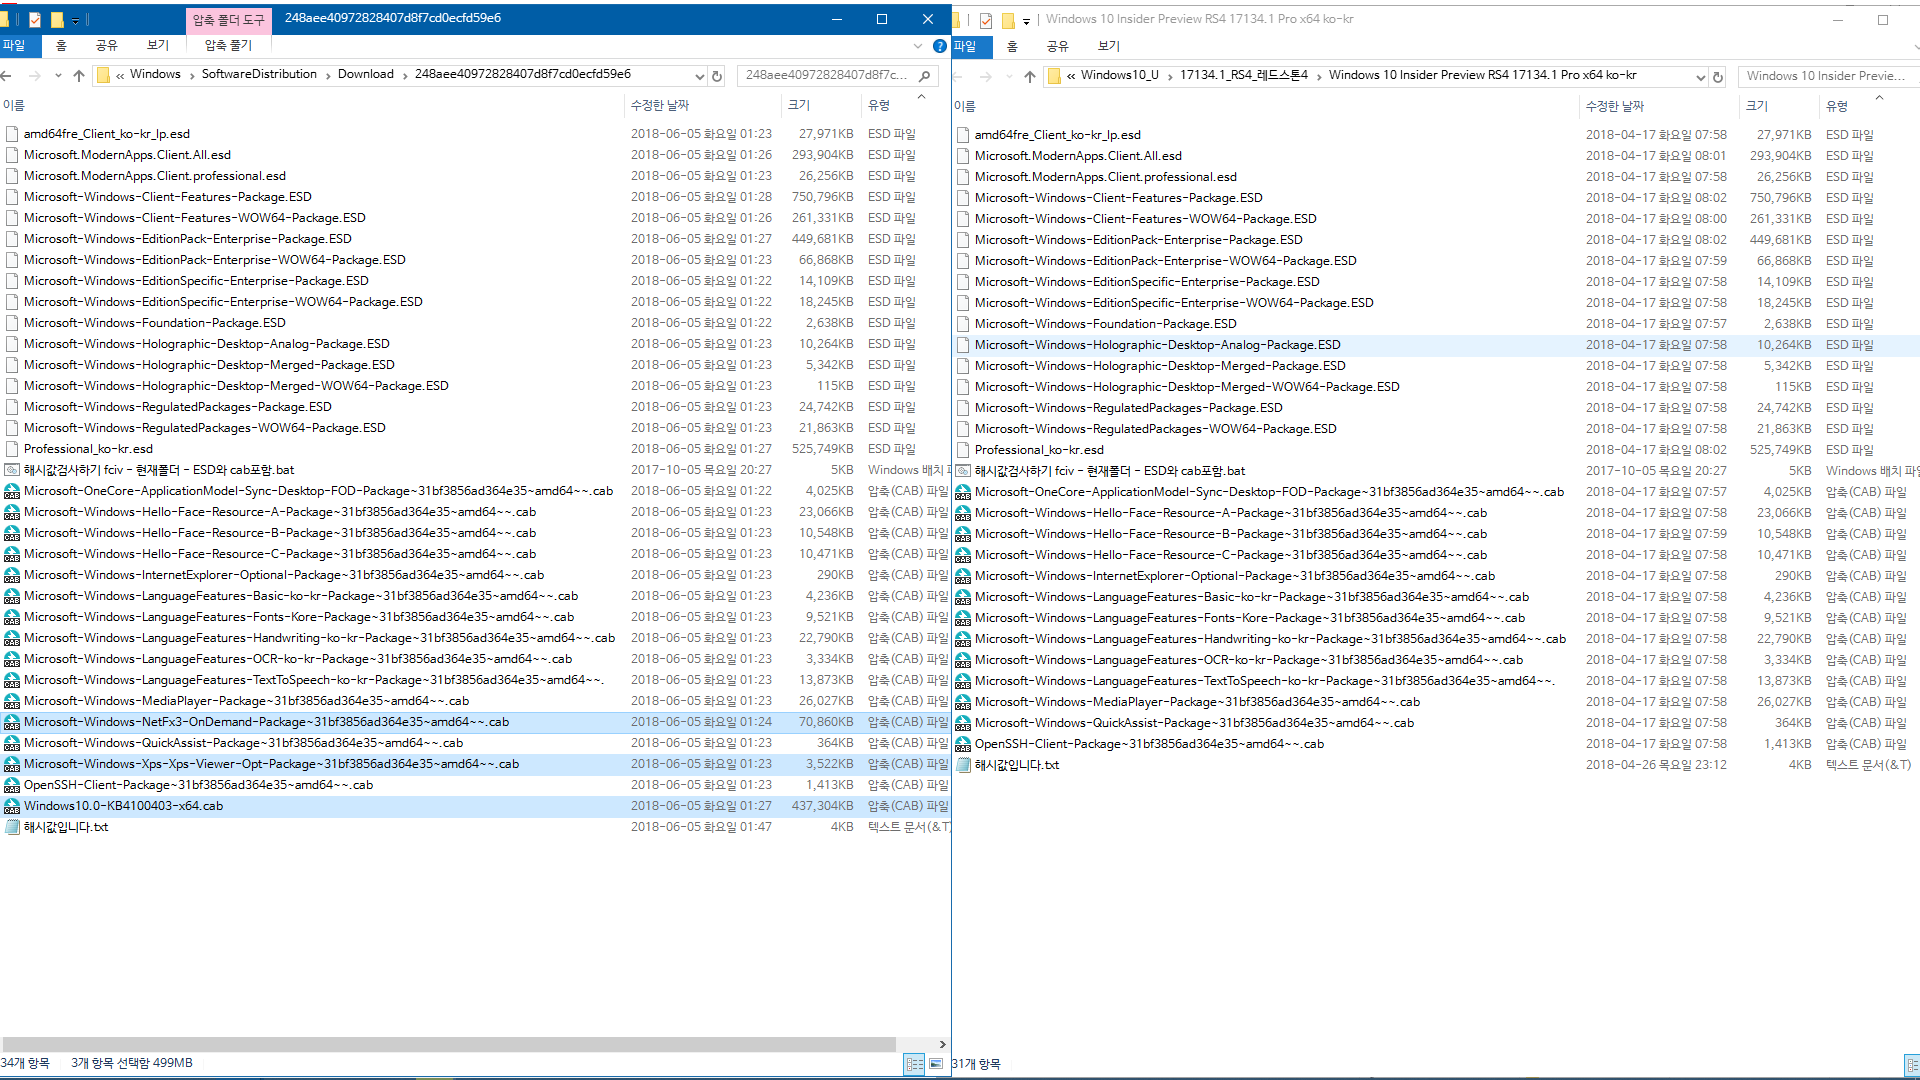 Windows 10 인사이더 프리뷰 RTM 때와 정식 출시 후에 윈도 업데이트 할 때 [업그레이드] 나오는 파일들이 다른지 확인합니다 - 현재 버전1803 RS4 레드스톤4 대상으로 확인 - 3개의 파일이 추가되네요 - 닷넷3.5와 누적 업데이트는 예상 범위인데요. 윈도 구성 파일 1개도 추가 되네요 2018-06-05_015354.png